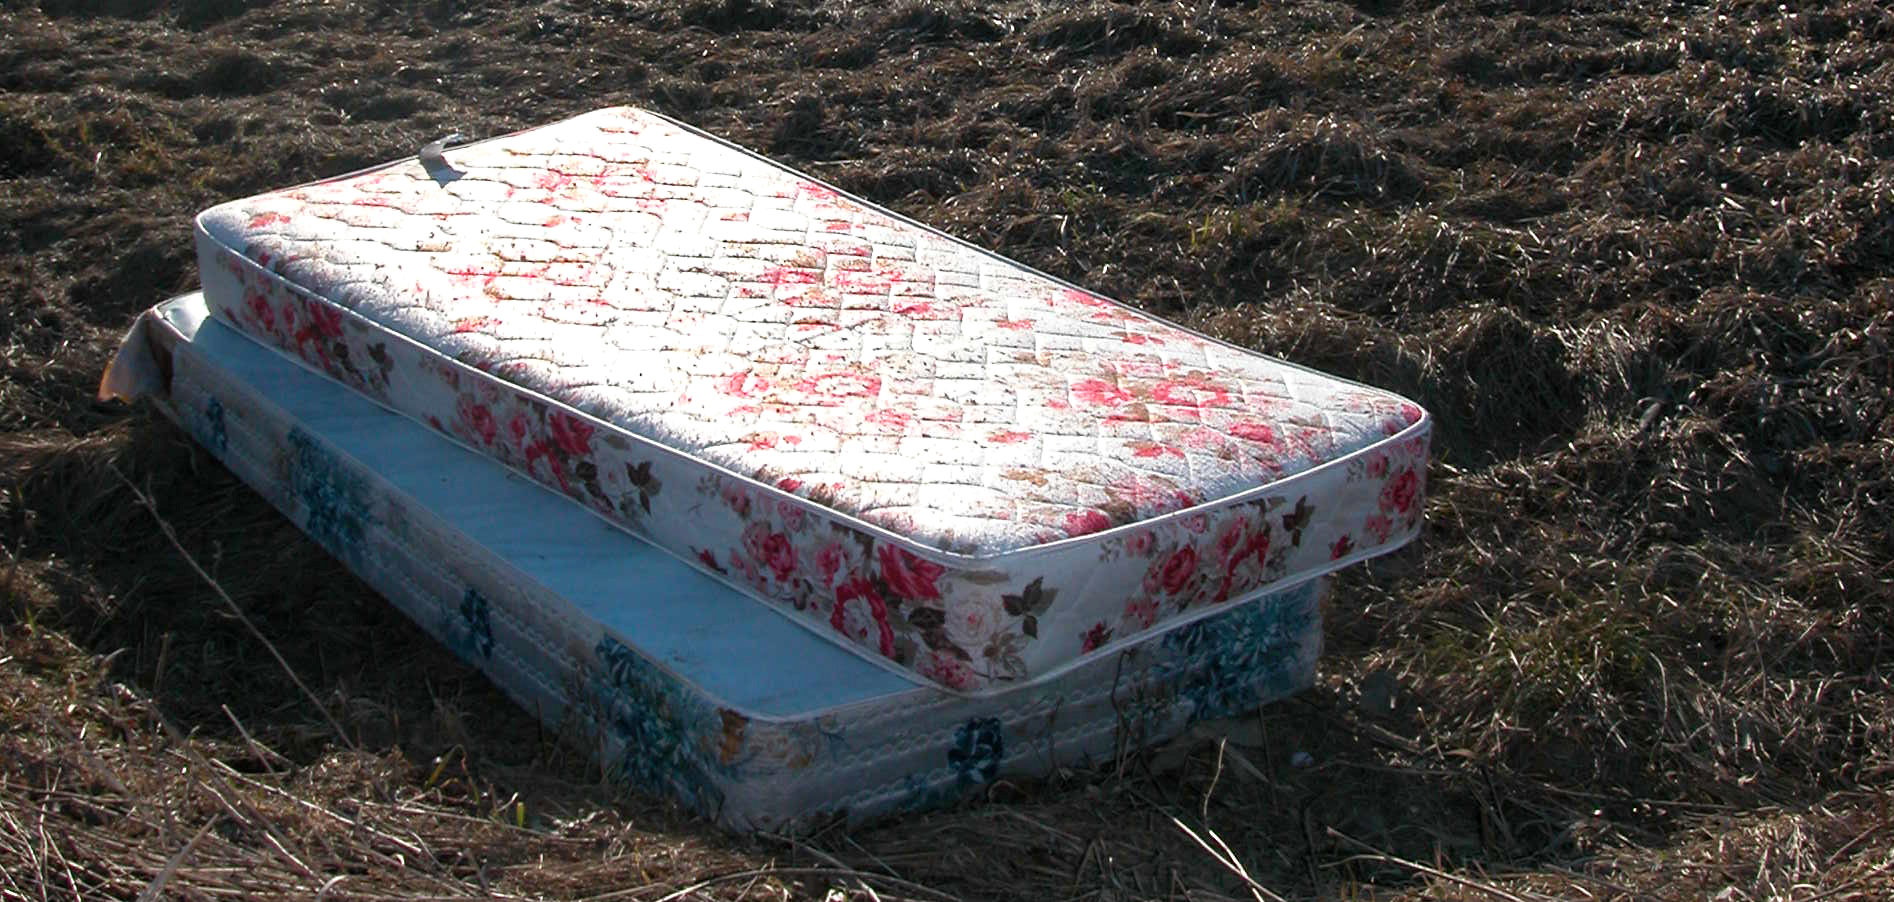 nyc mattress disposal law